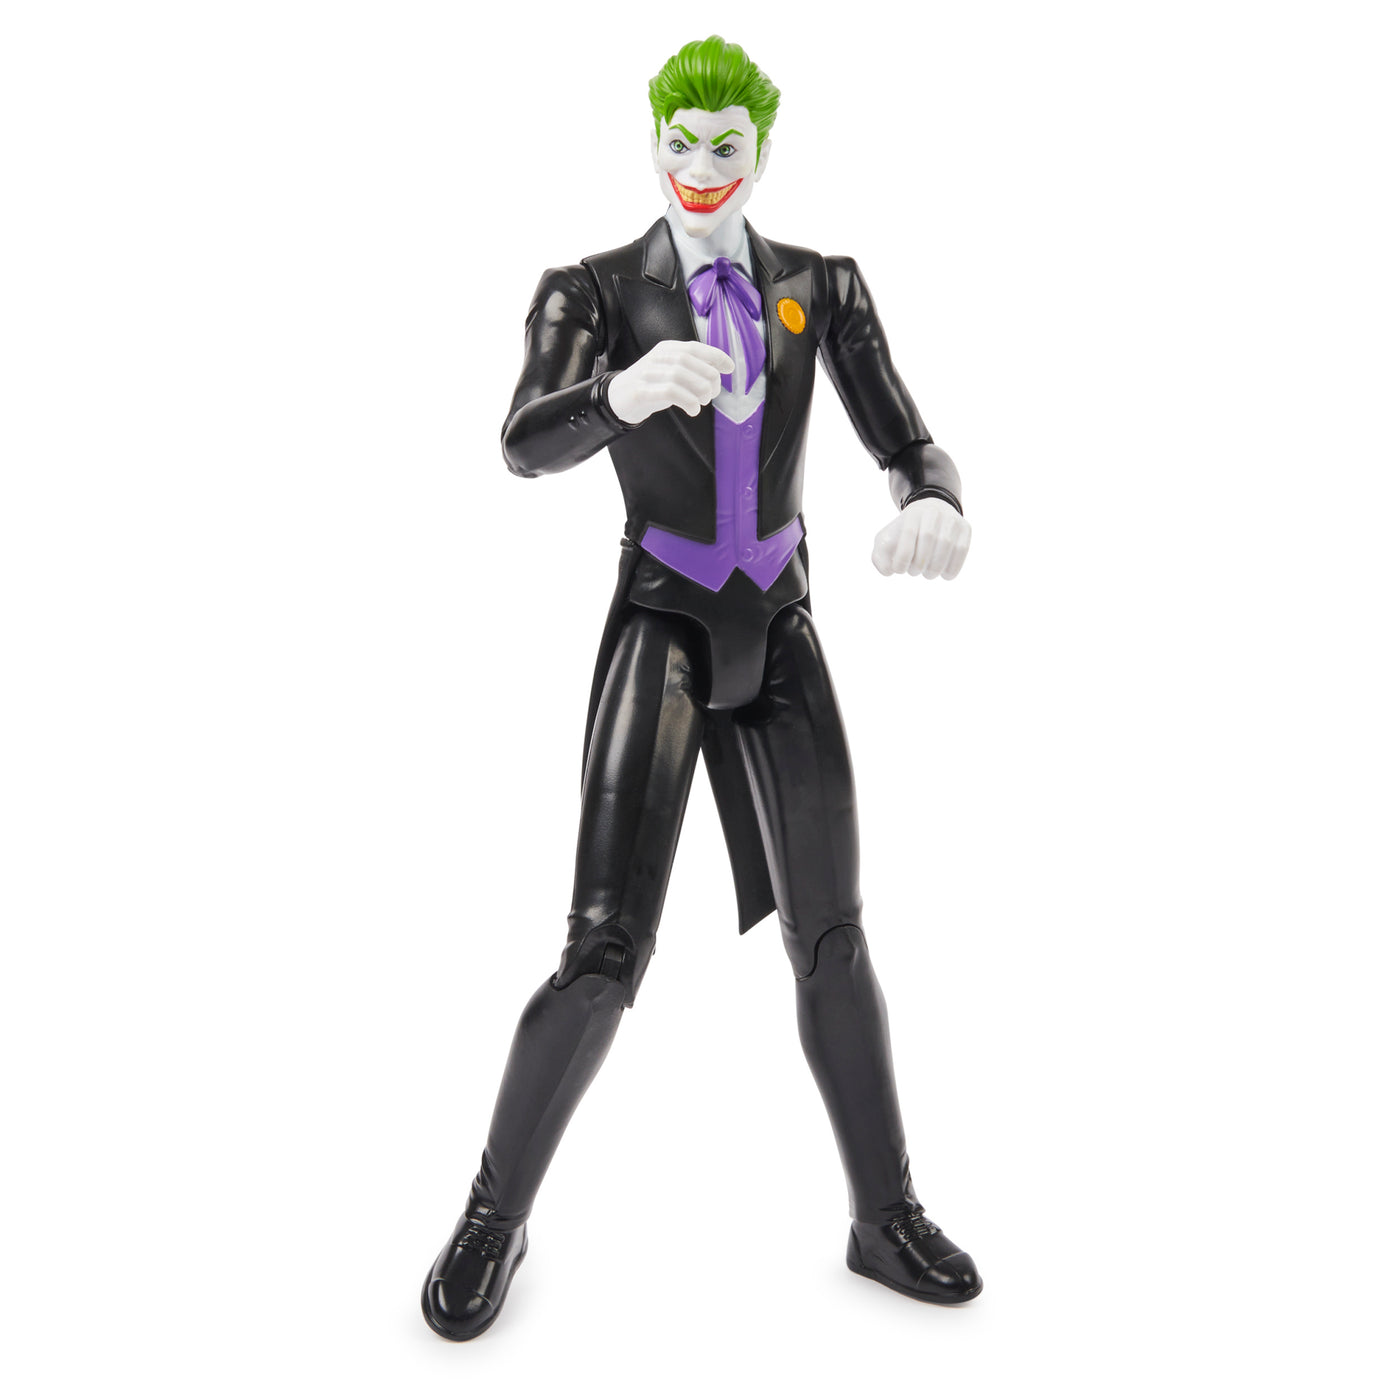 Joker 12-Inch The Joker Action Figure (Black Suit)